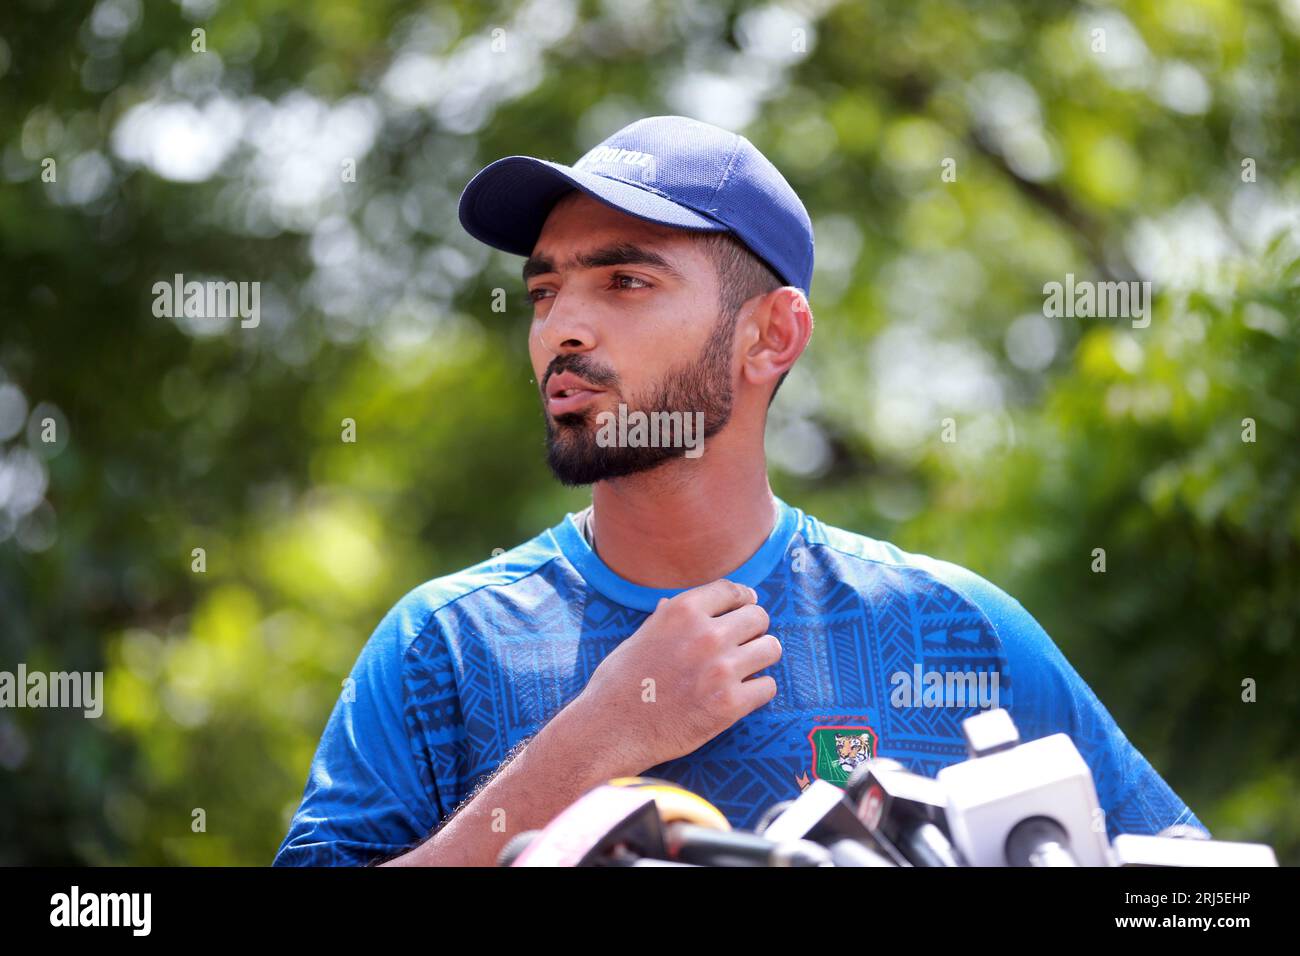 Saif Hassan, giocatore della nazionale di cricket del Bangladesh, parla con i giornalisti della sede del Bangladesh Crickey Board (BCB) nei prossimi Giochi asiatici e in Asia Foto Stock